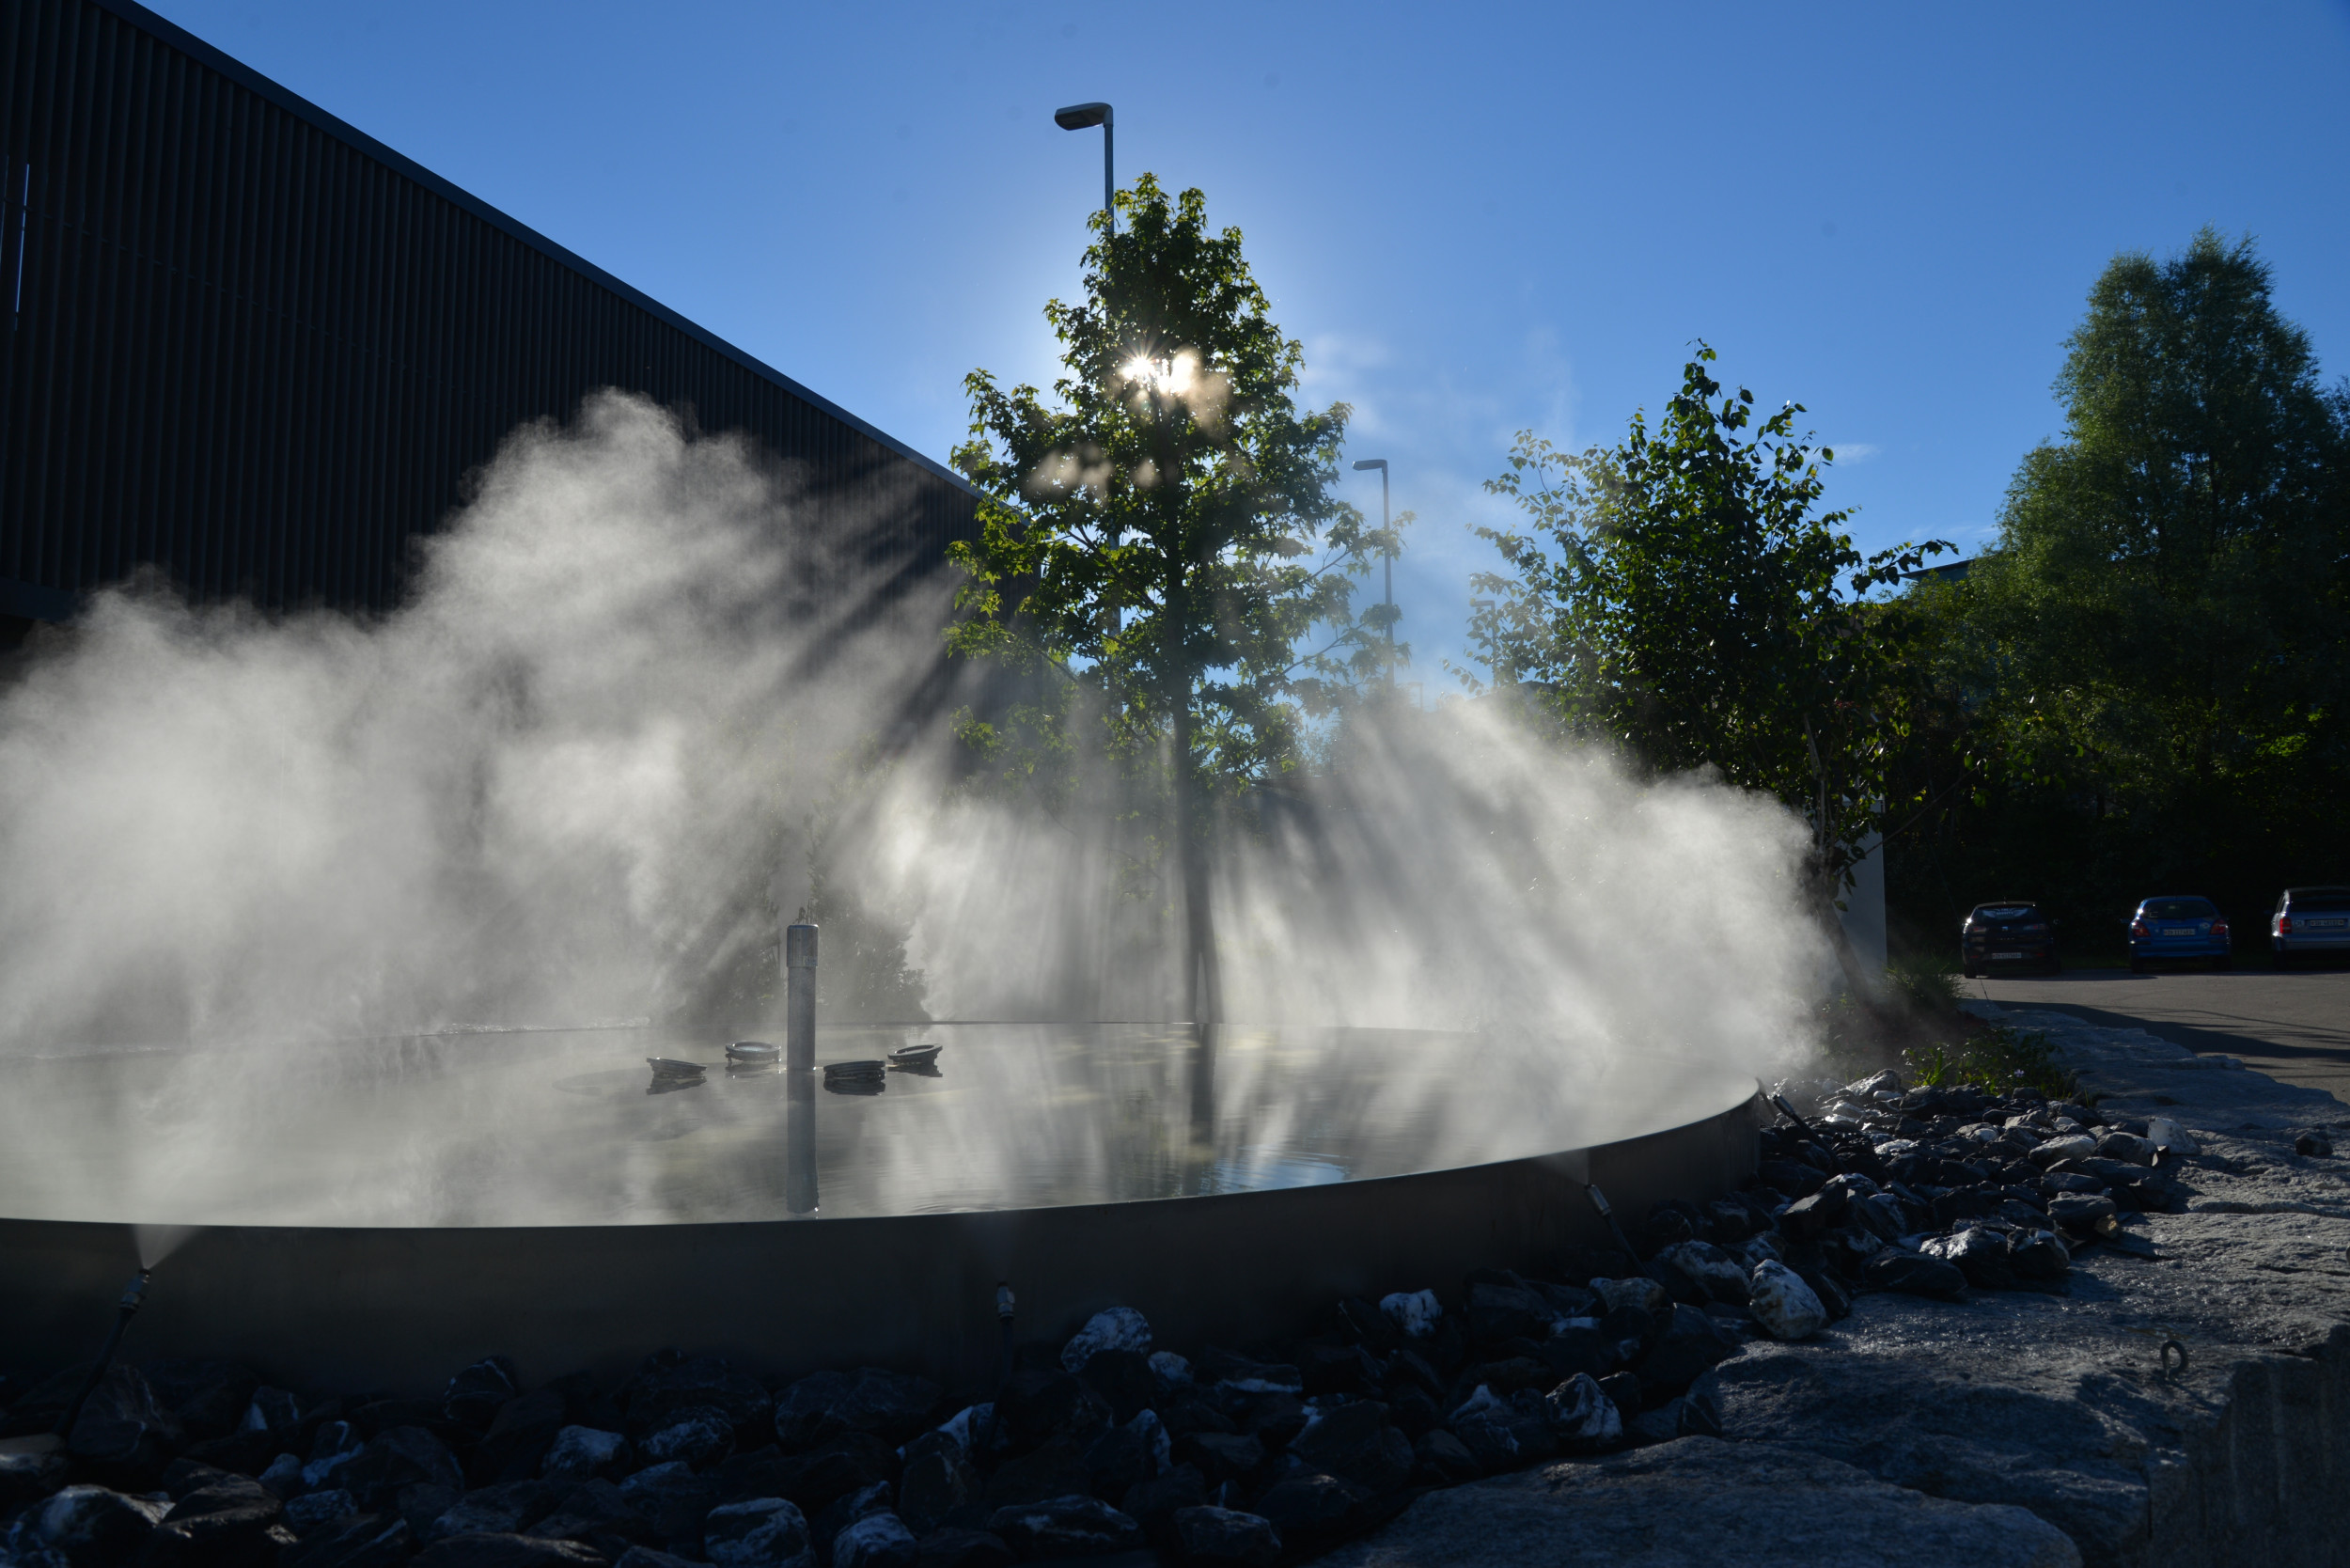 Nebel Springbrunnen Campus Aquatec Wasser Düse RGB Beleuchtung